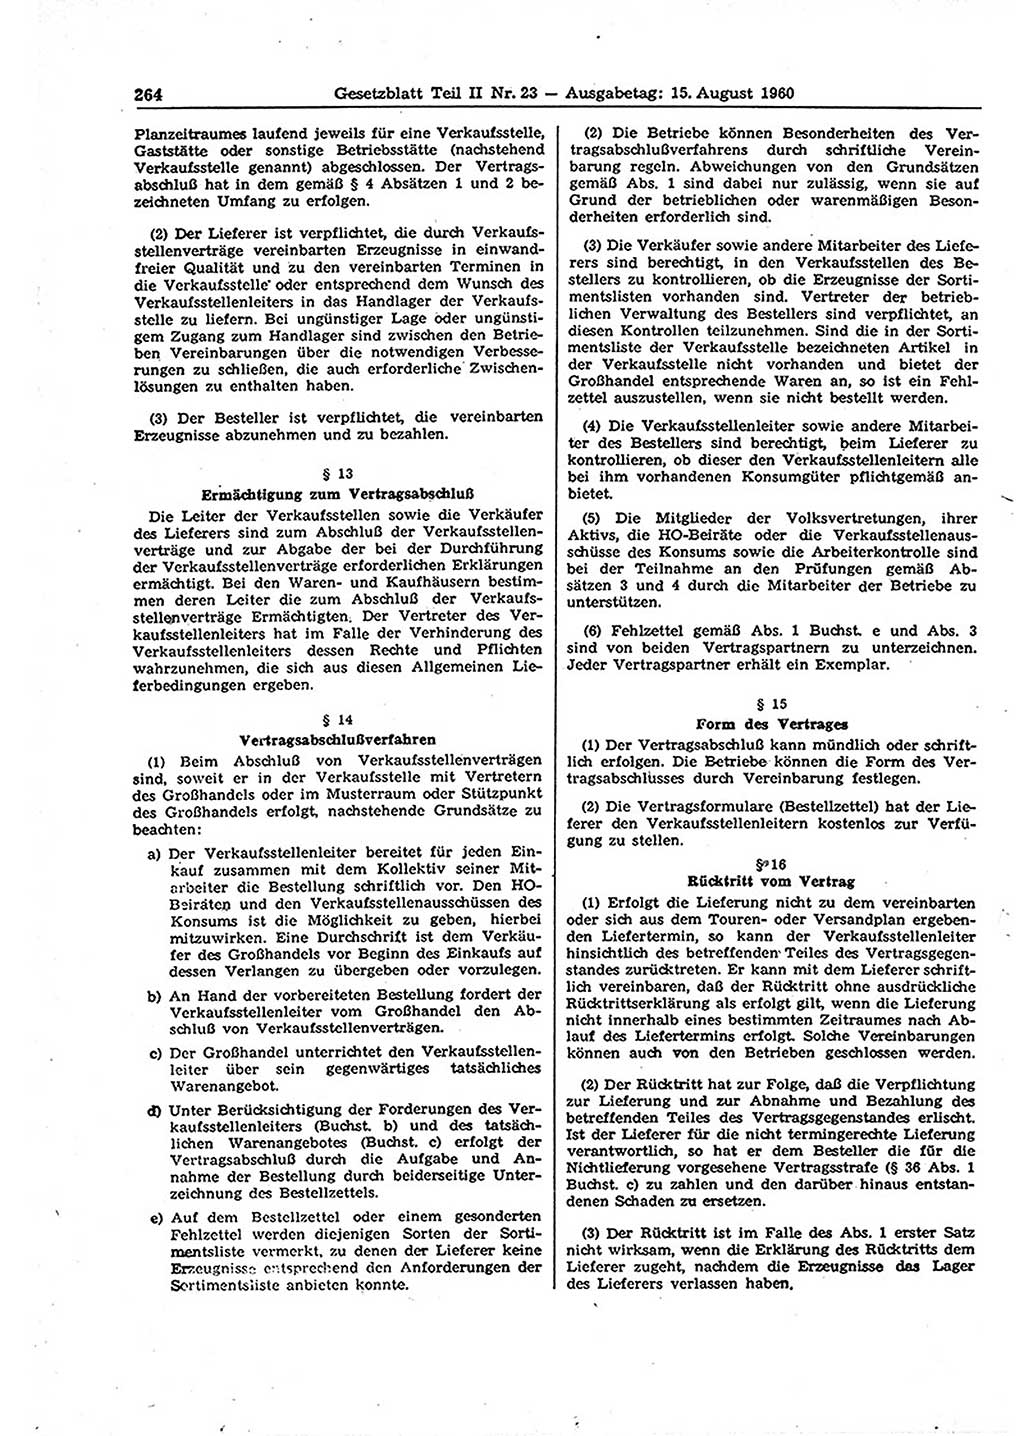 Gesetzblatt (GBl.) der Deutschen Demokratischen Republik (DDR) Teil ⅠⅠ 1960, Seite 264 (GBl. DDR ⅠⅠ 1960, S. 264)